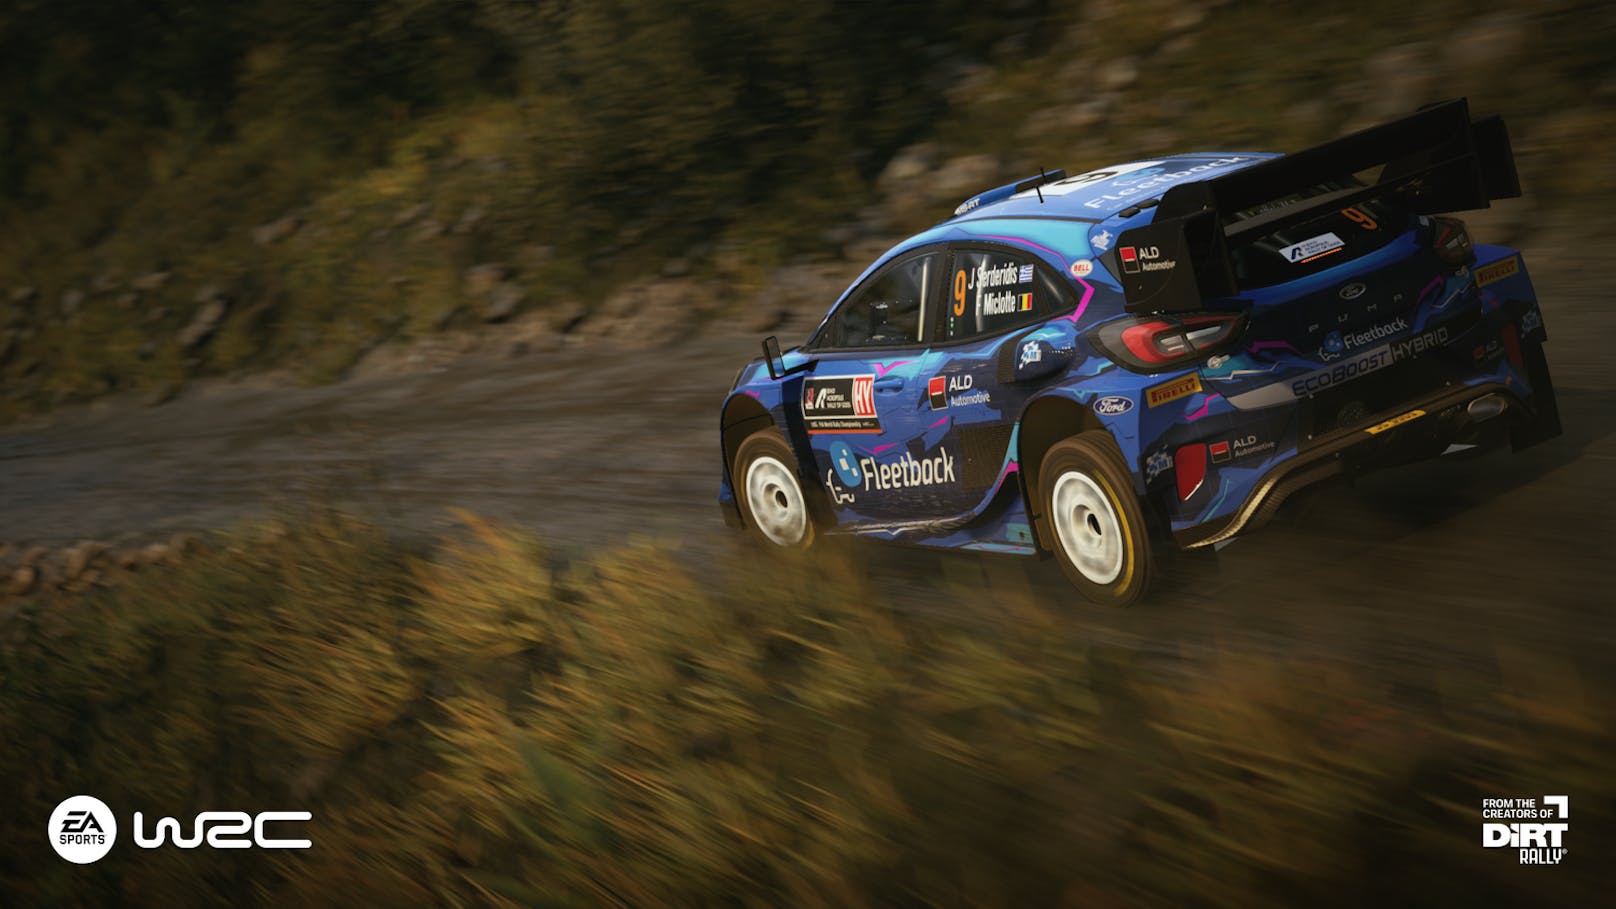 Bisher ist "EA Sports WRC" bereits ein authentisches Rallye-Spiel, dem man anmerkt, aus welchem Hause es kommt. So floss eindeutig die Erfahrung sowie Inspiration ...